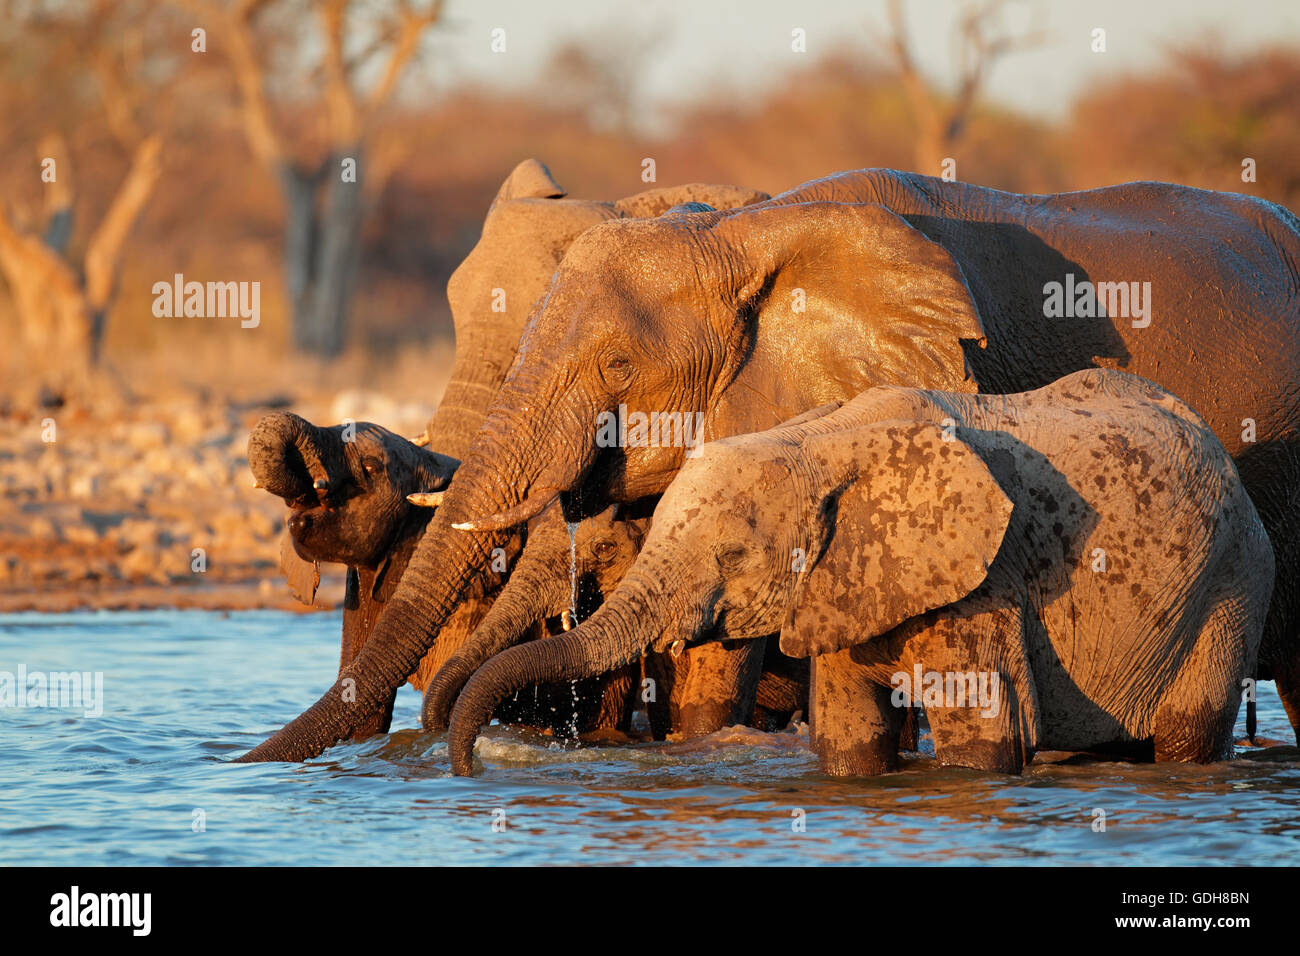 Les éléphants d'Afrique (Loxodonta africana) eau potable, Etosha National Park, Namibie Banque D'Images